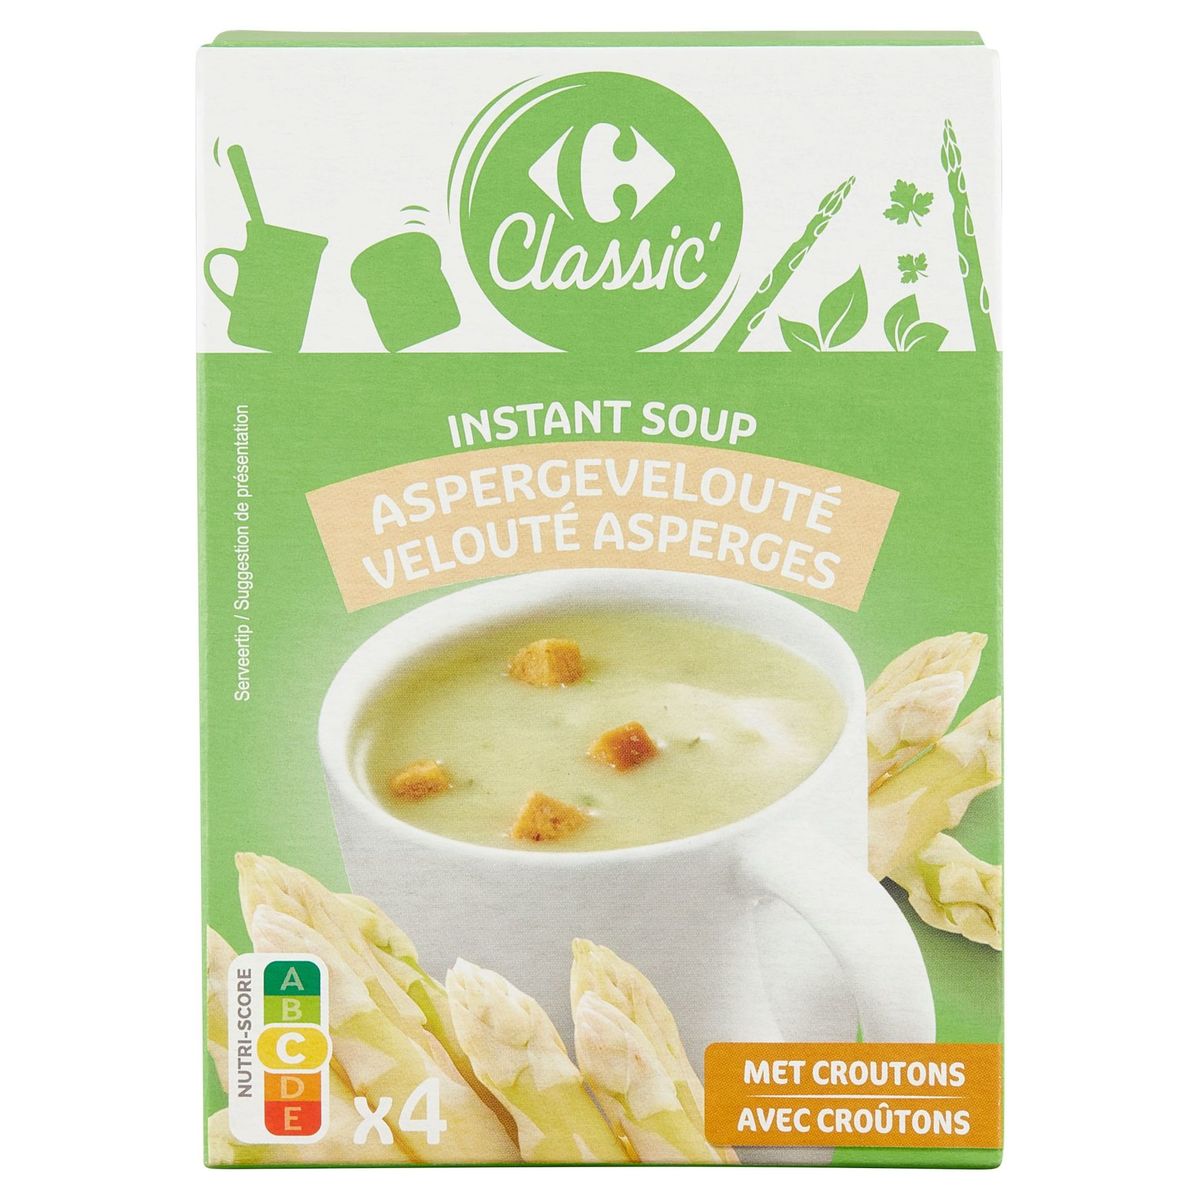 Carrefour Classic' Instant Soup Aspergevelouté 4 x 20 g